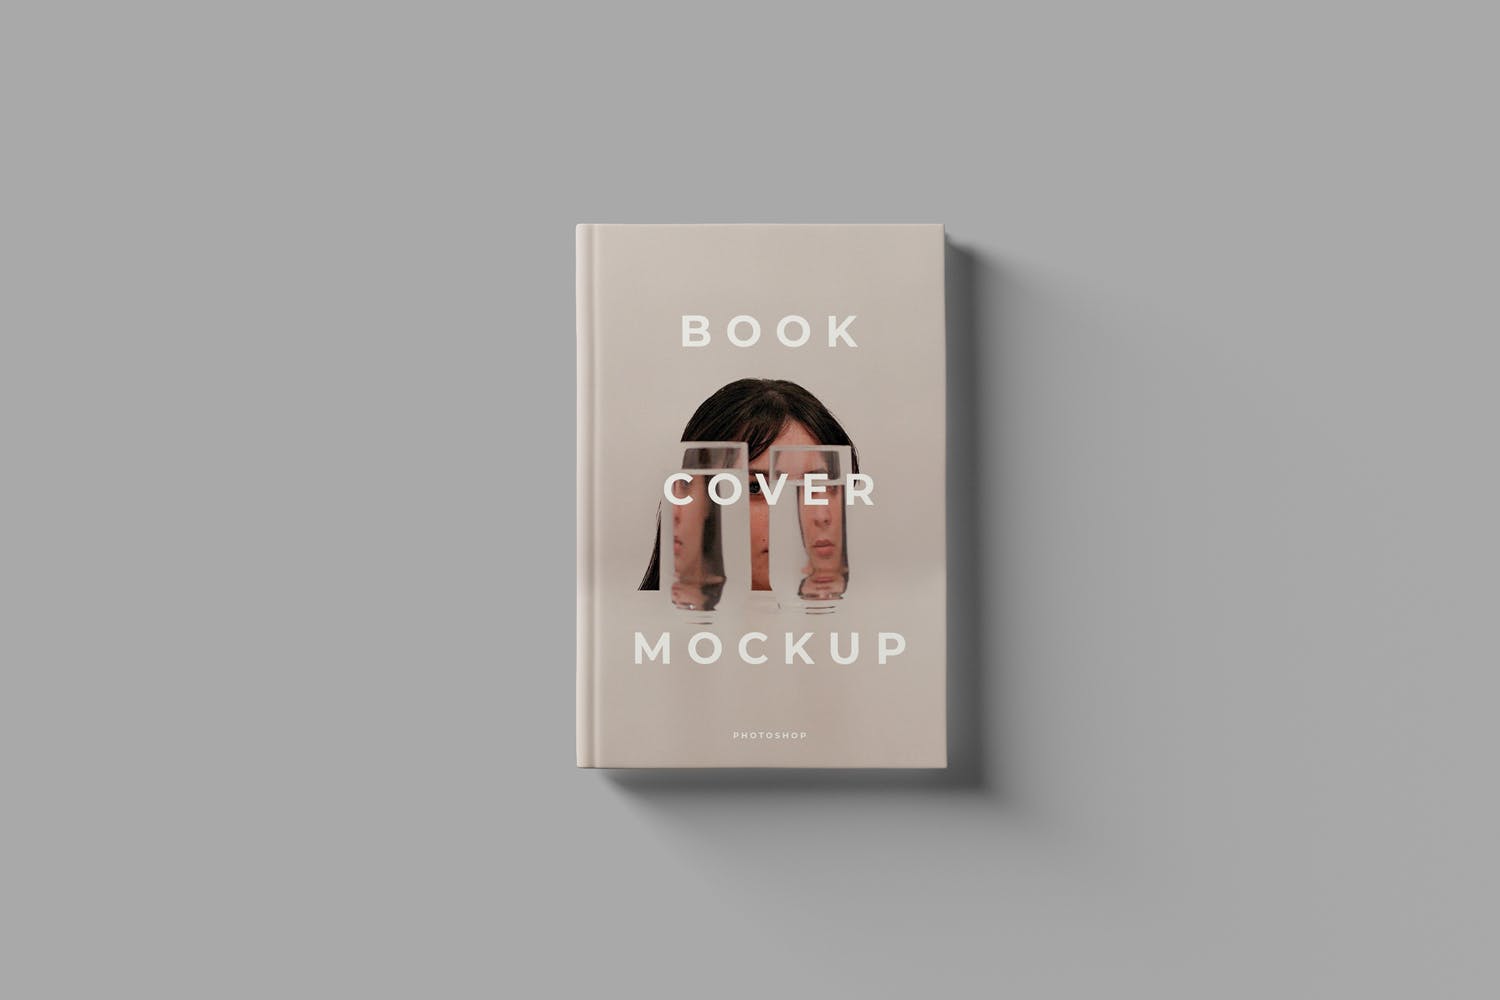 镂空设计风格精装图书封面设计样机模板 Book Cover Mockups插图(1)